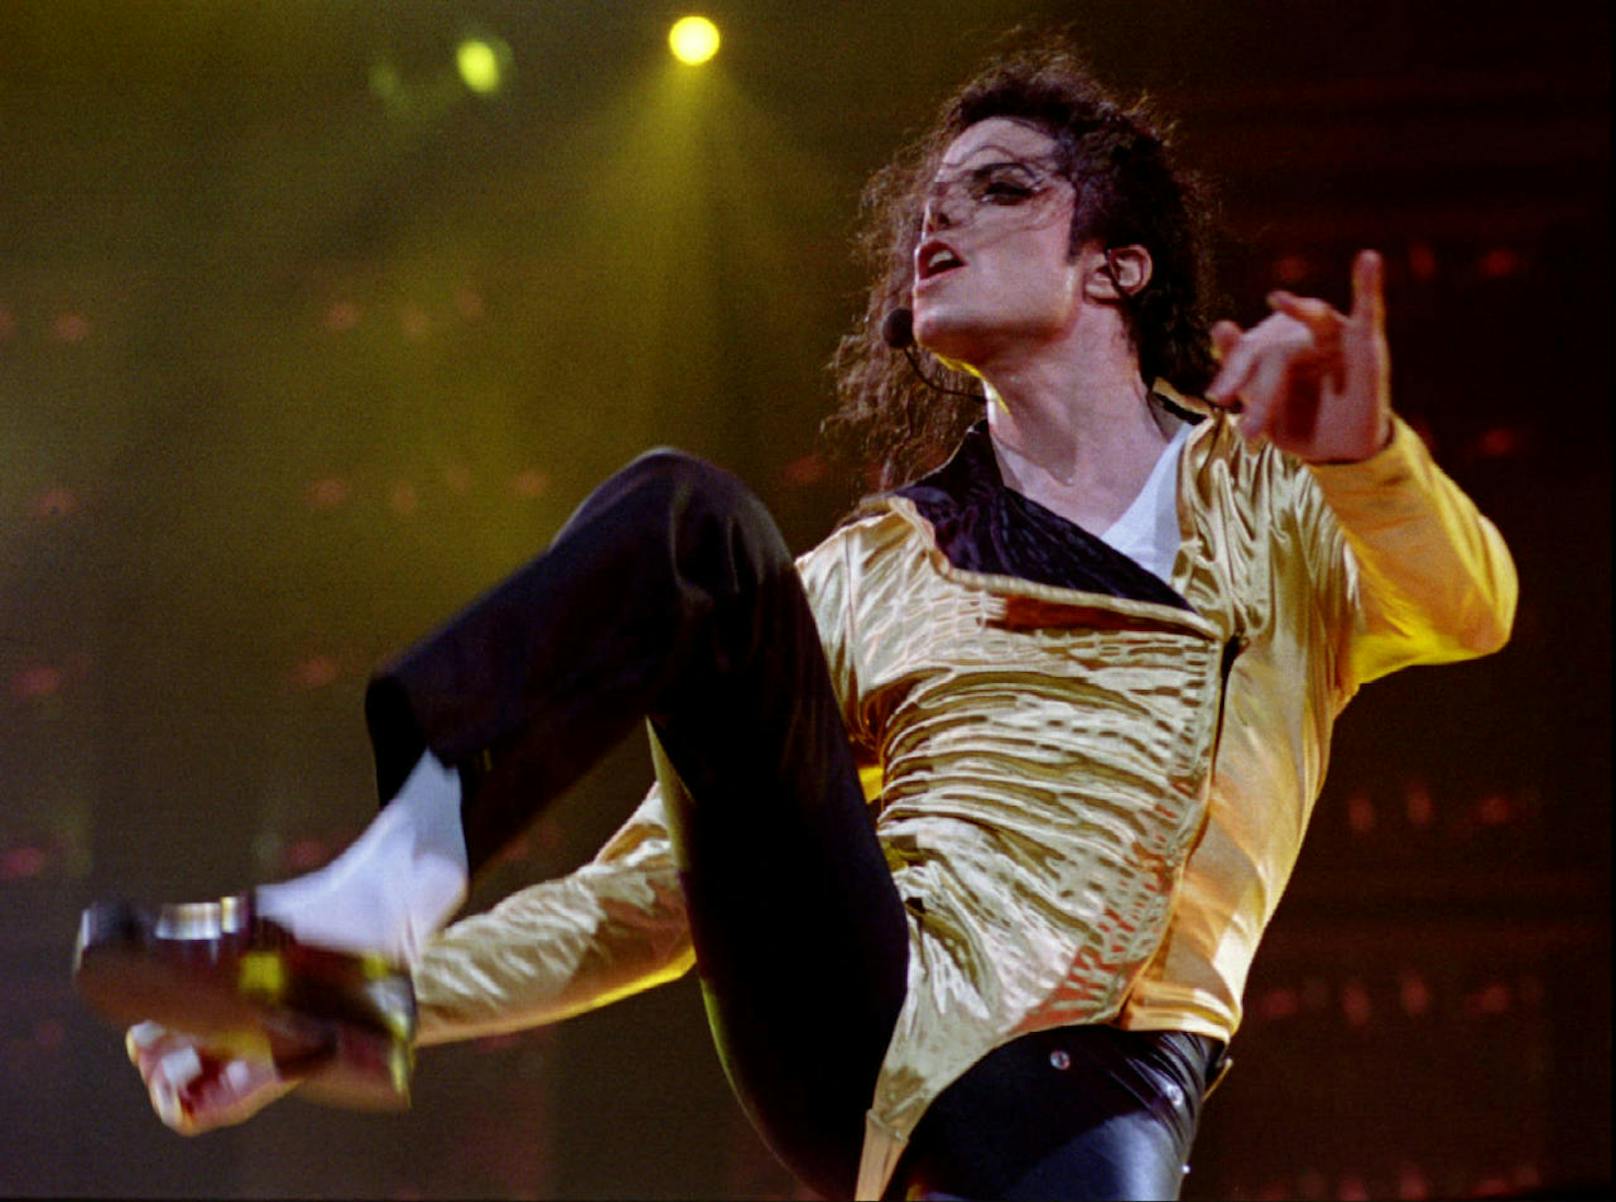 Für seinen weltberühmten "Moonwalk" trug Michael Jackson eigene Schuhe.